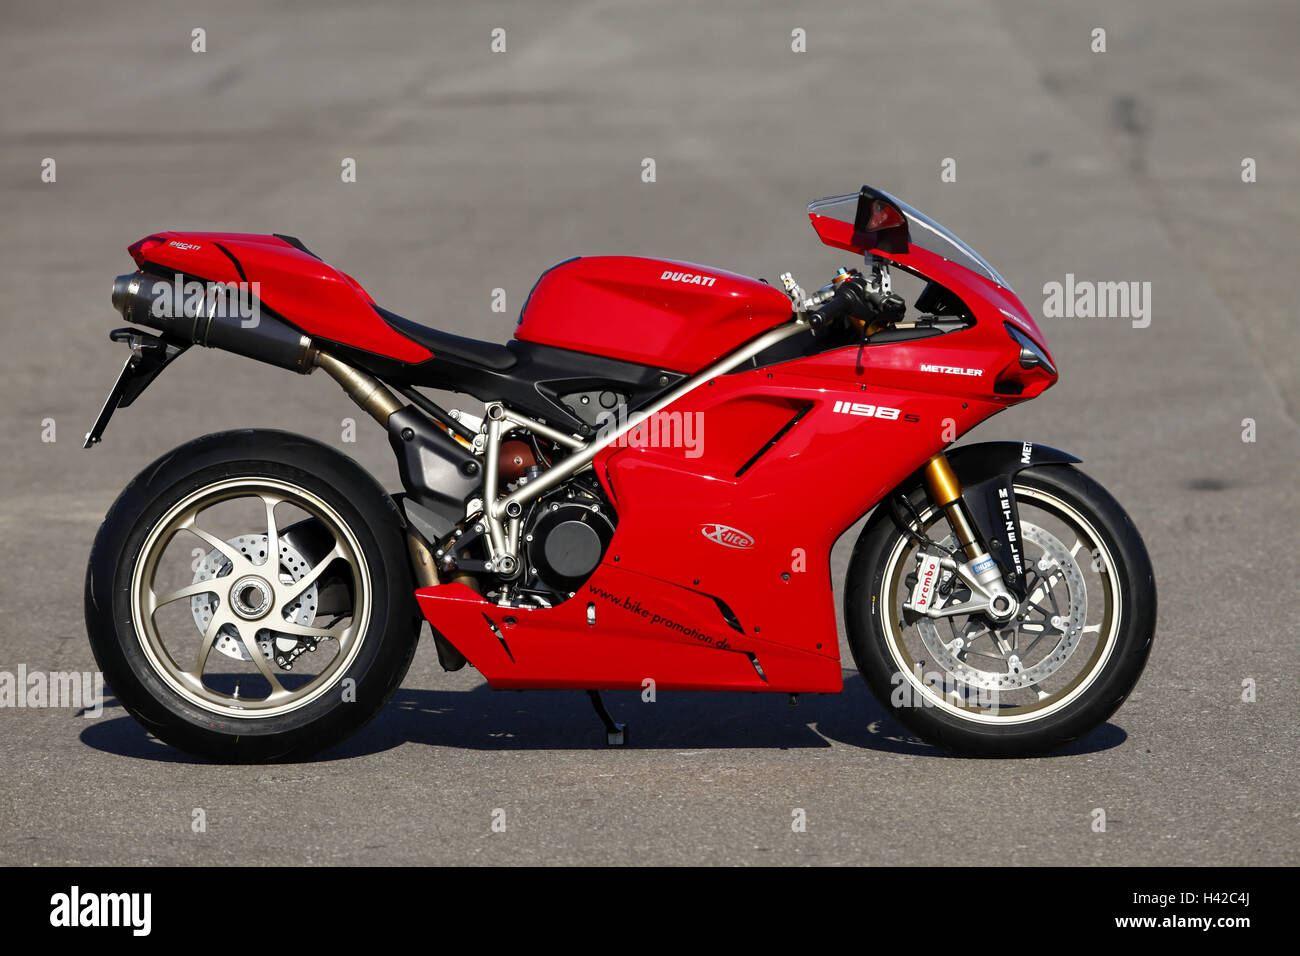 Ducati 1198ver, ninguna propiedad release, Foto de stock